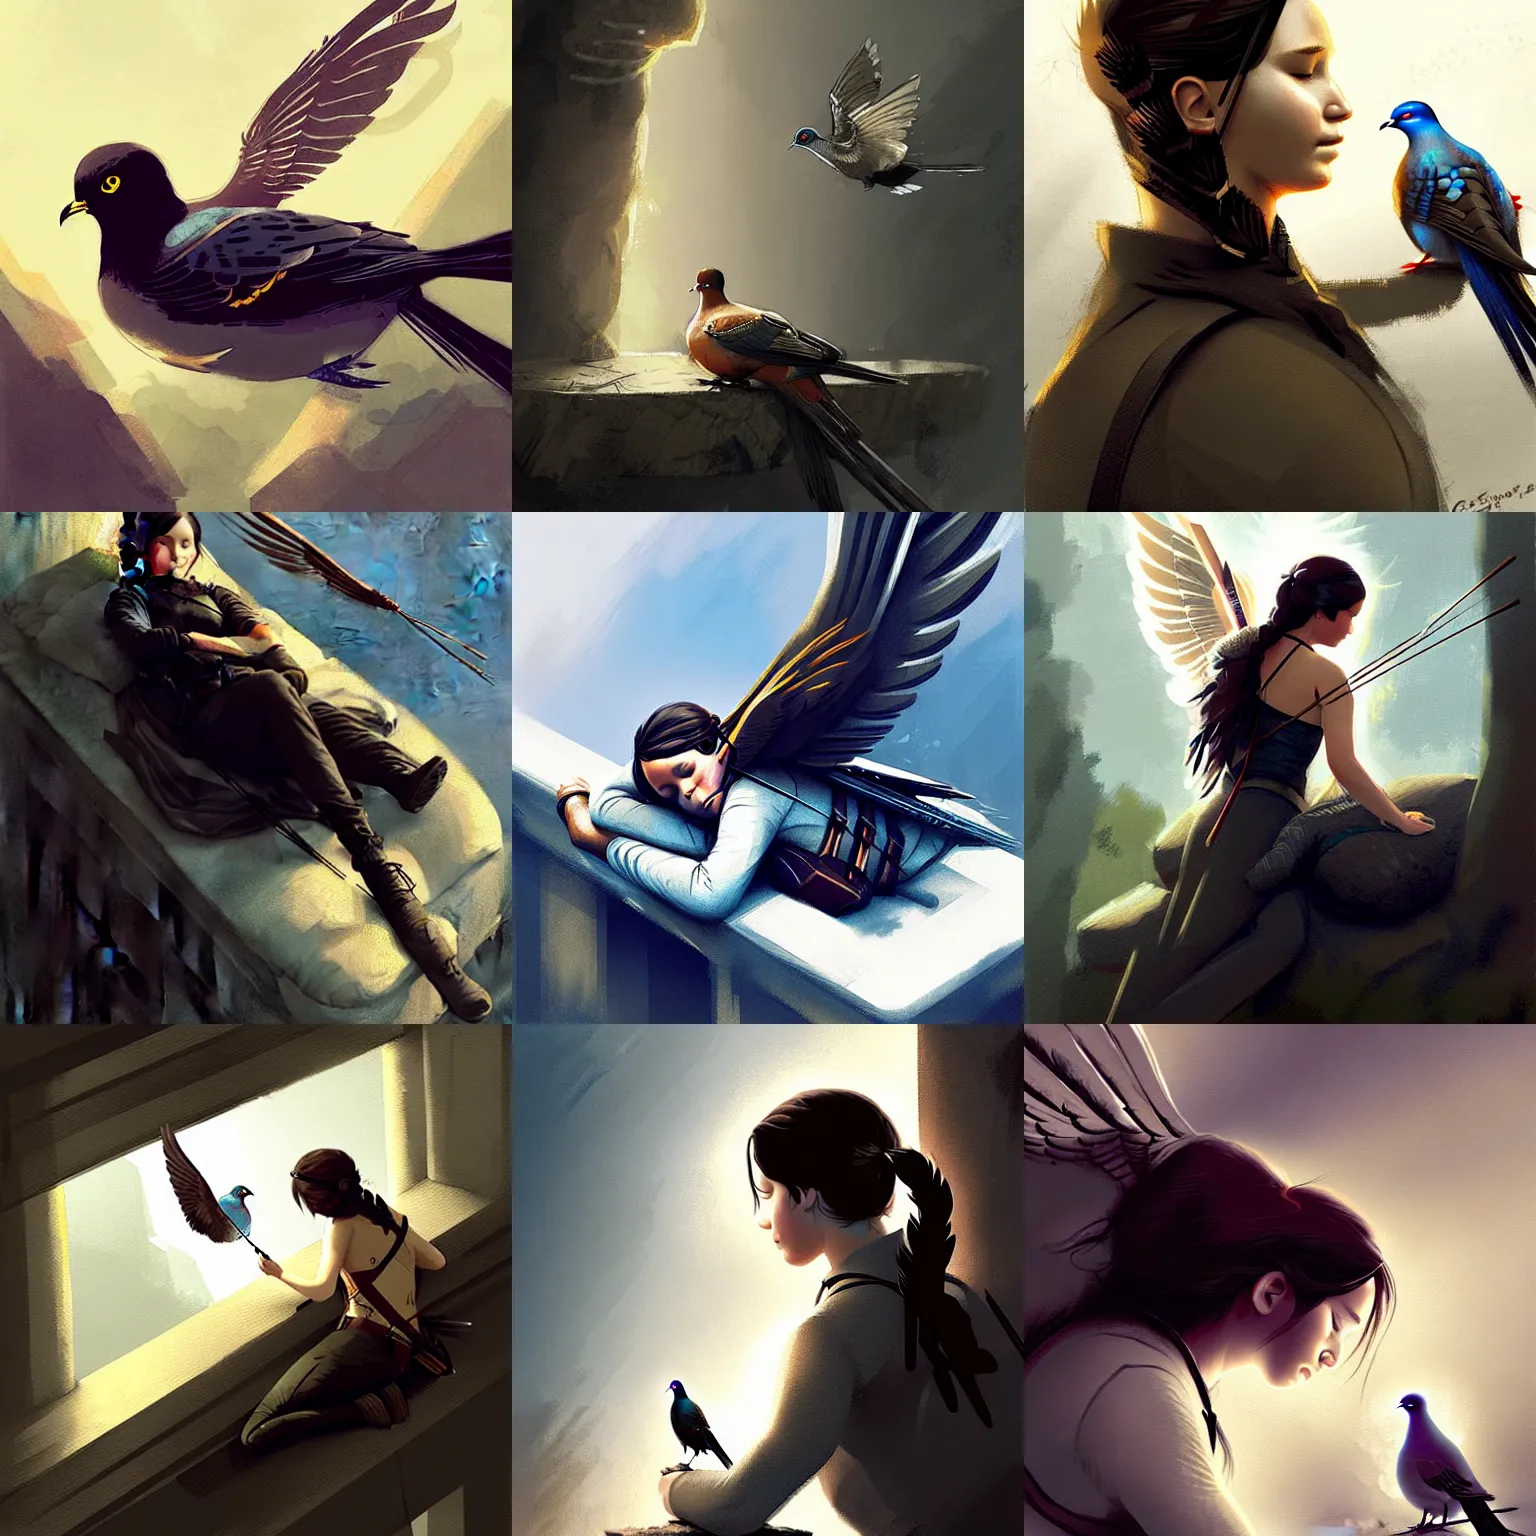 Prompt: katniss everdeen sleeping on top of a pigeon, digital art by greg rutkowski